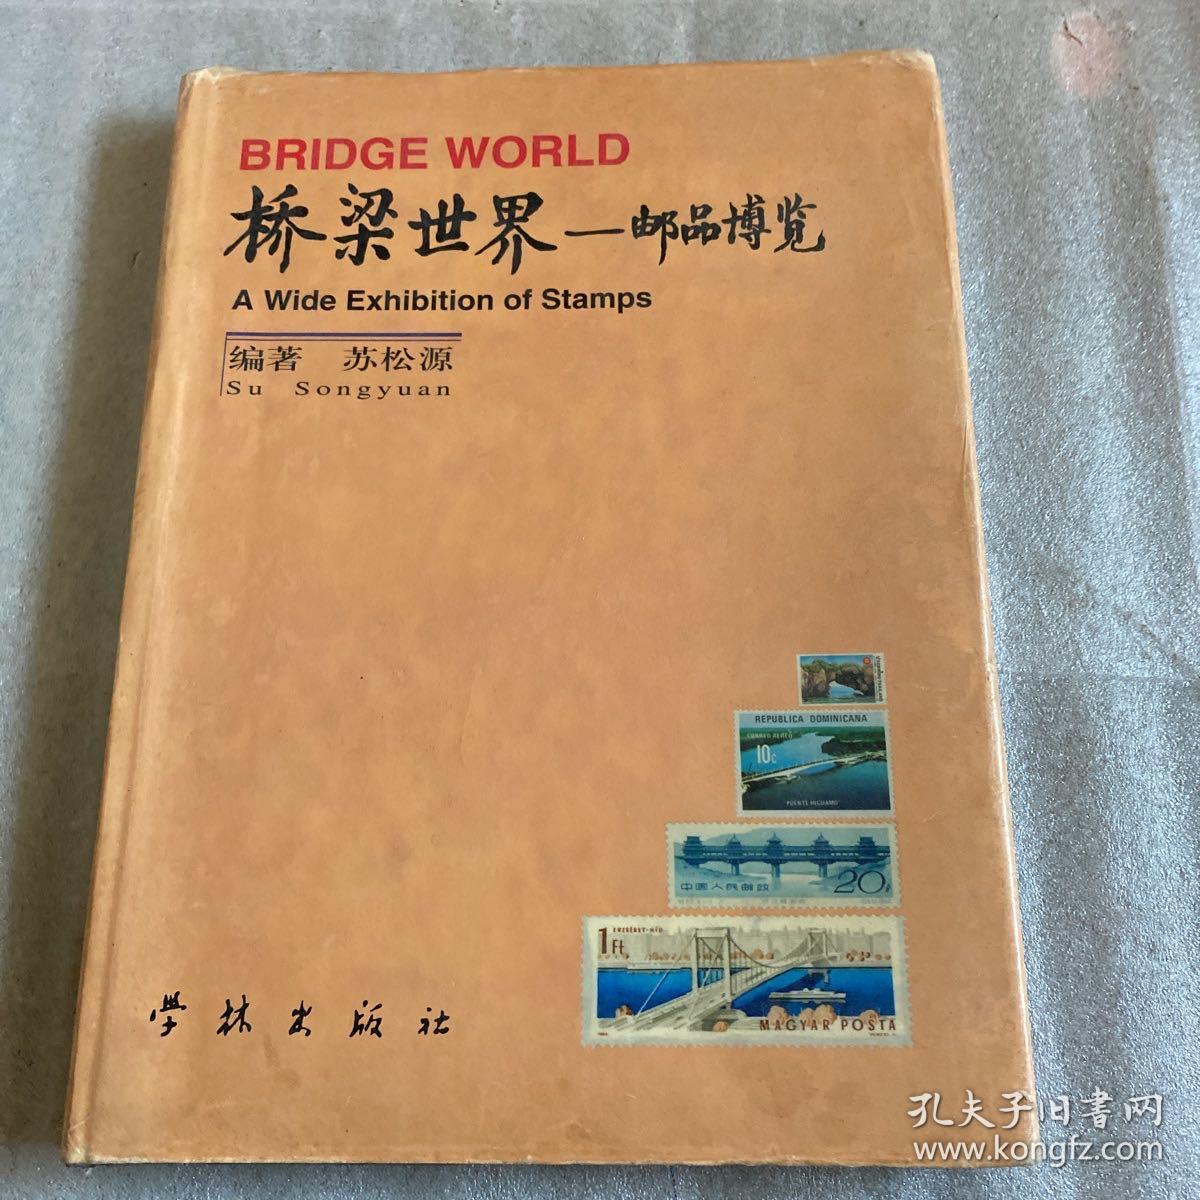 桥梁世界——邮品博览